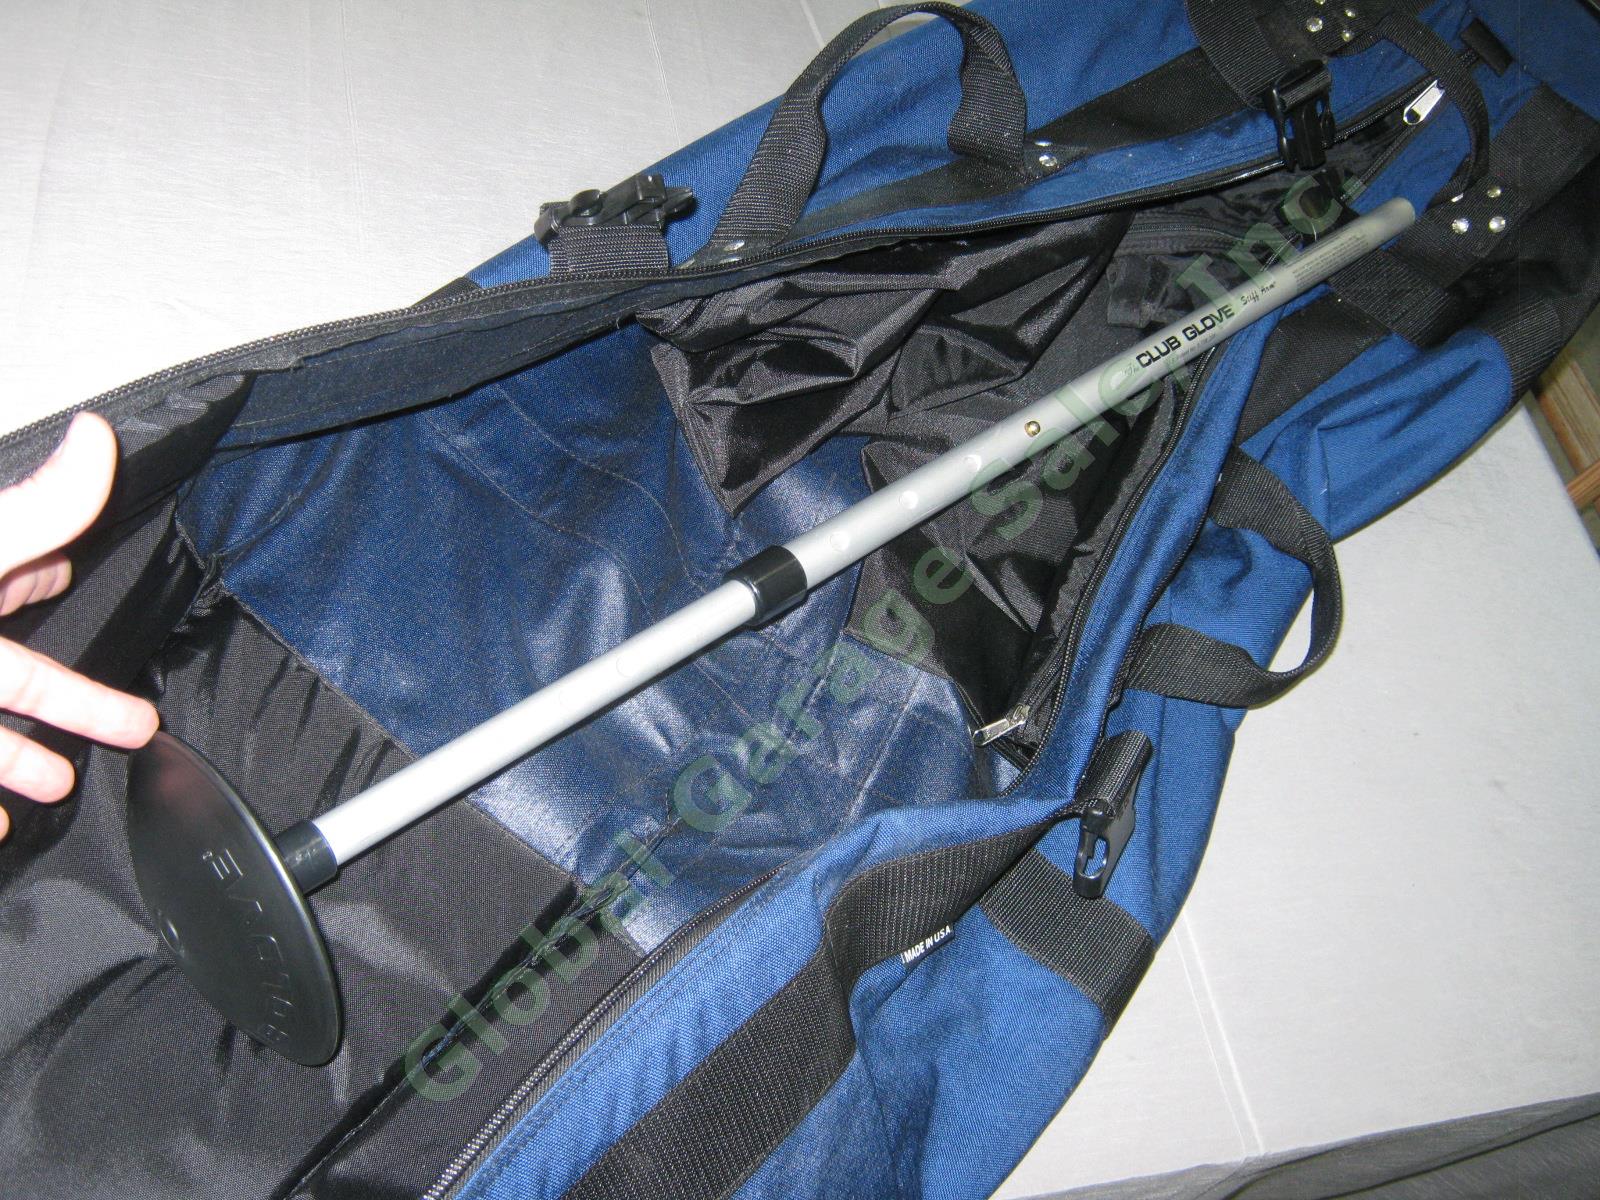 Navy Club Glove Burst Proof Travel Golf Club Bag With Wheels 2 II Free Stiff Arm 5